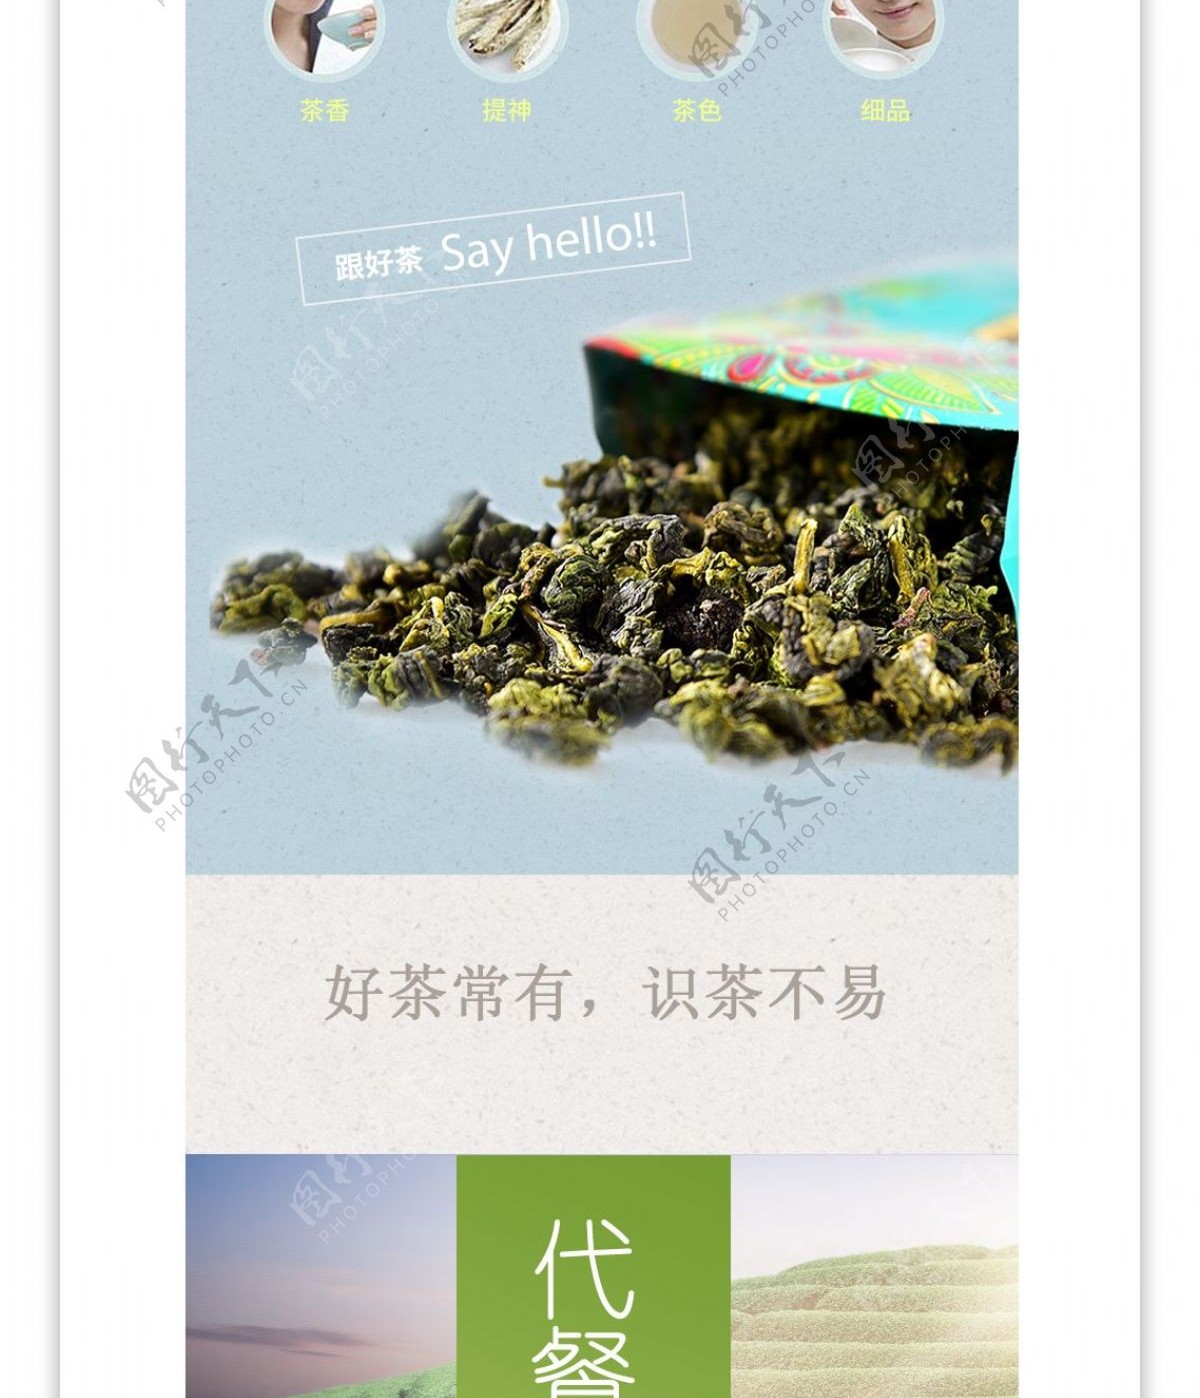 中国风户外茶饮品详情页